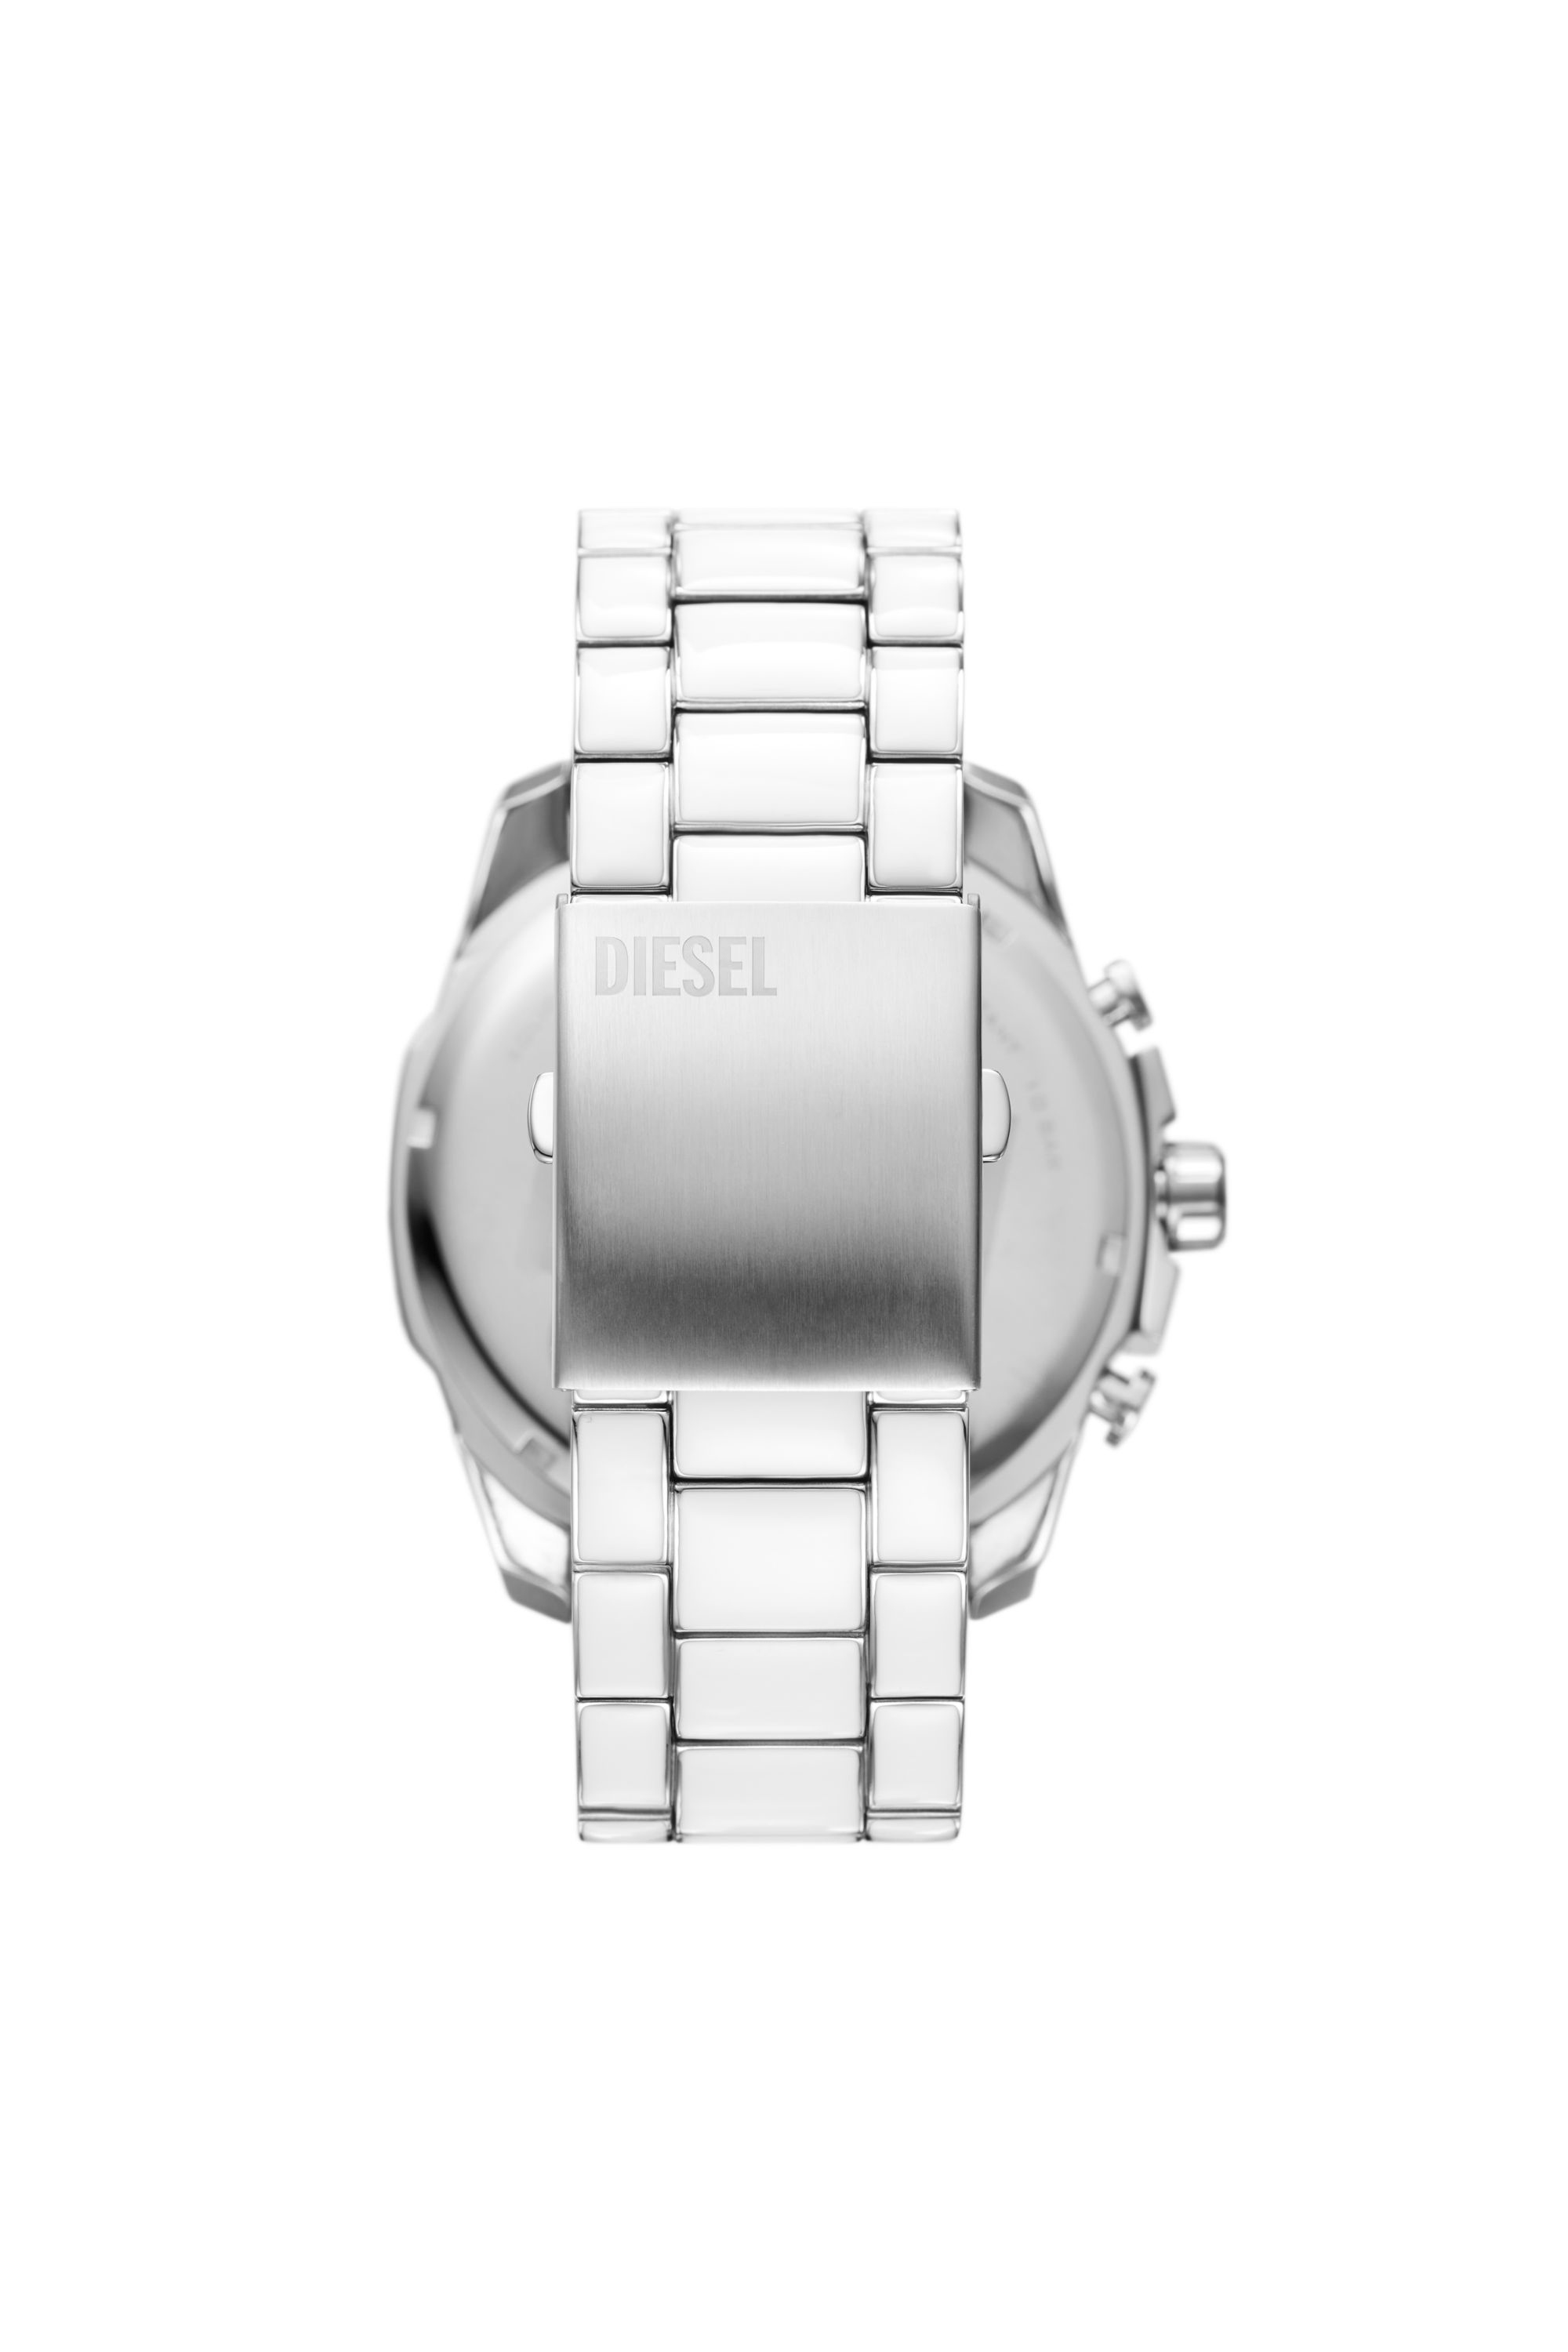 Diesel - DZ4660, Herren Mega Chief Armbanduhr aus Edelstahl mit weißen Akzenten in Silber - Image 2